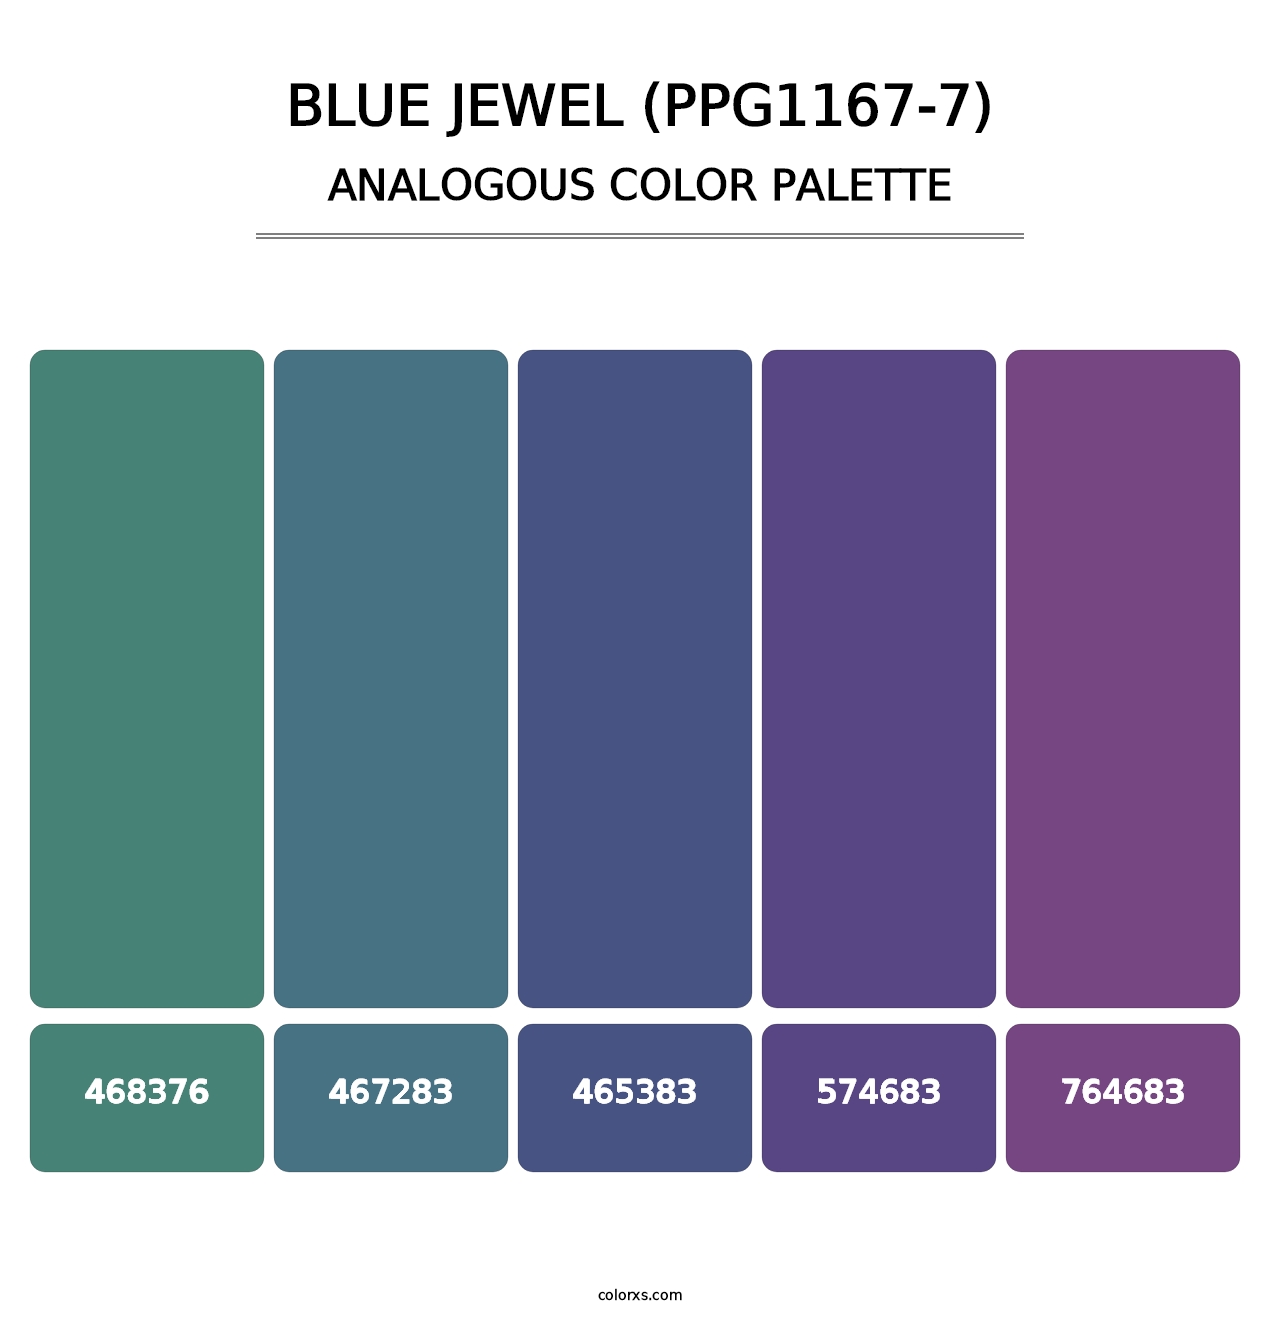 Blue Jewel (PPG1167-7) - Analogous Color Palette